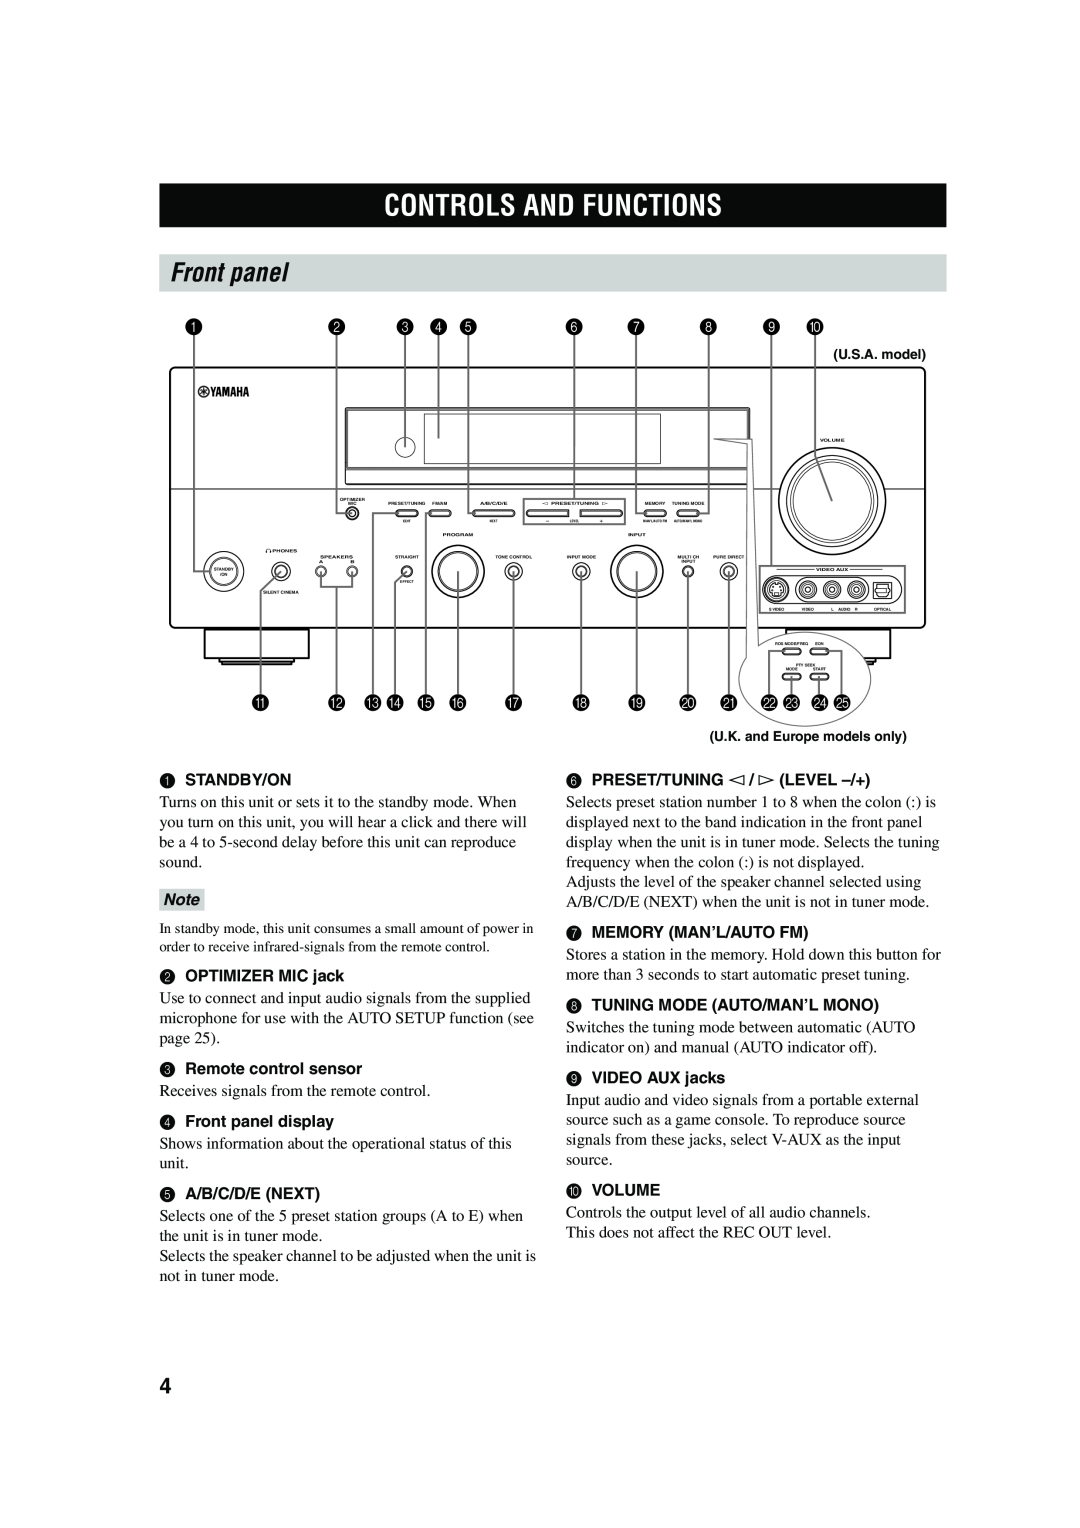 Yamaha RX-V650 owner manual Controls And Functions, Front panel, B C D E F G H I J K L M N O 